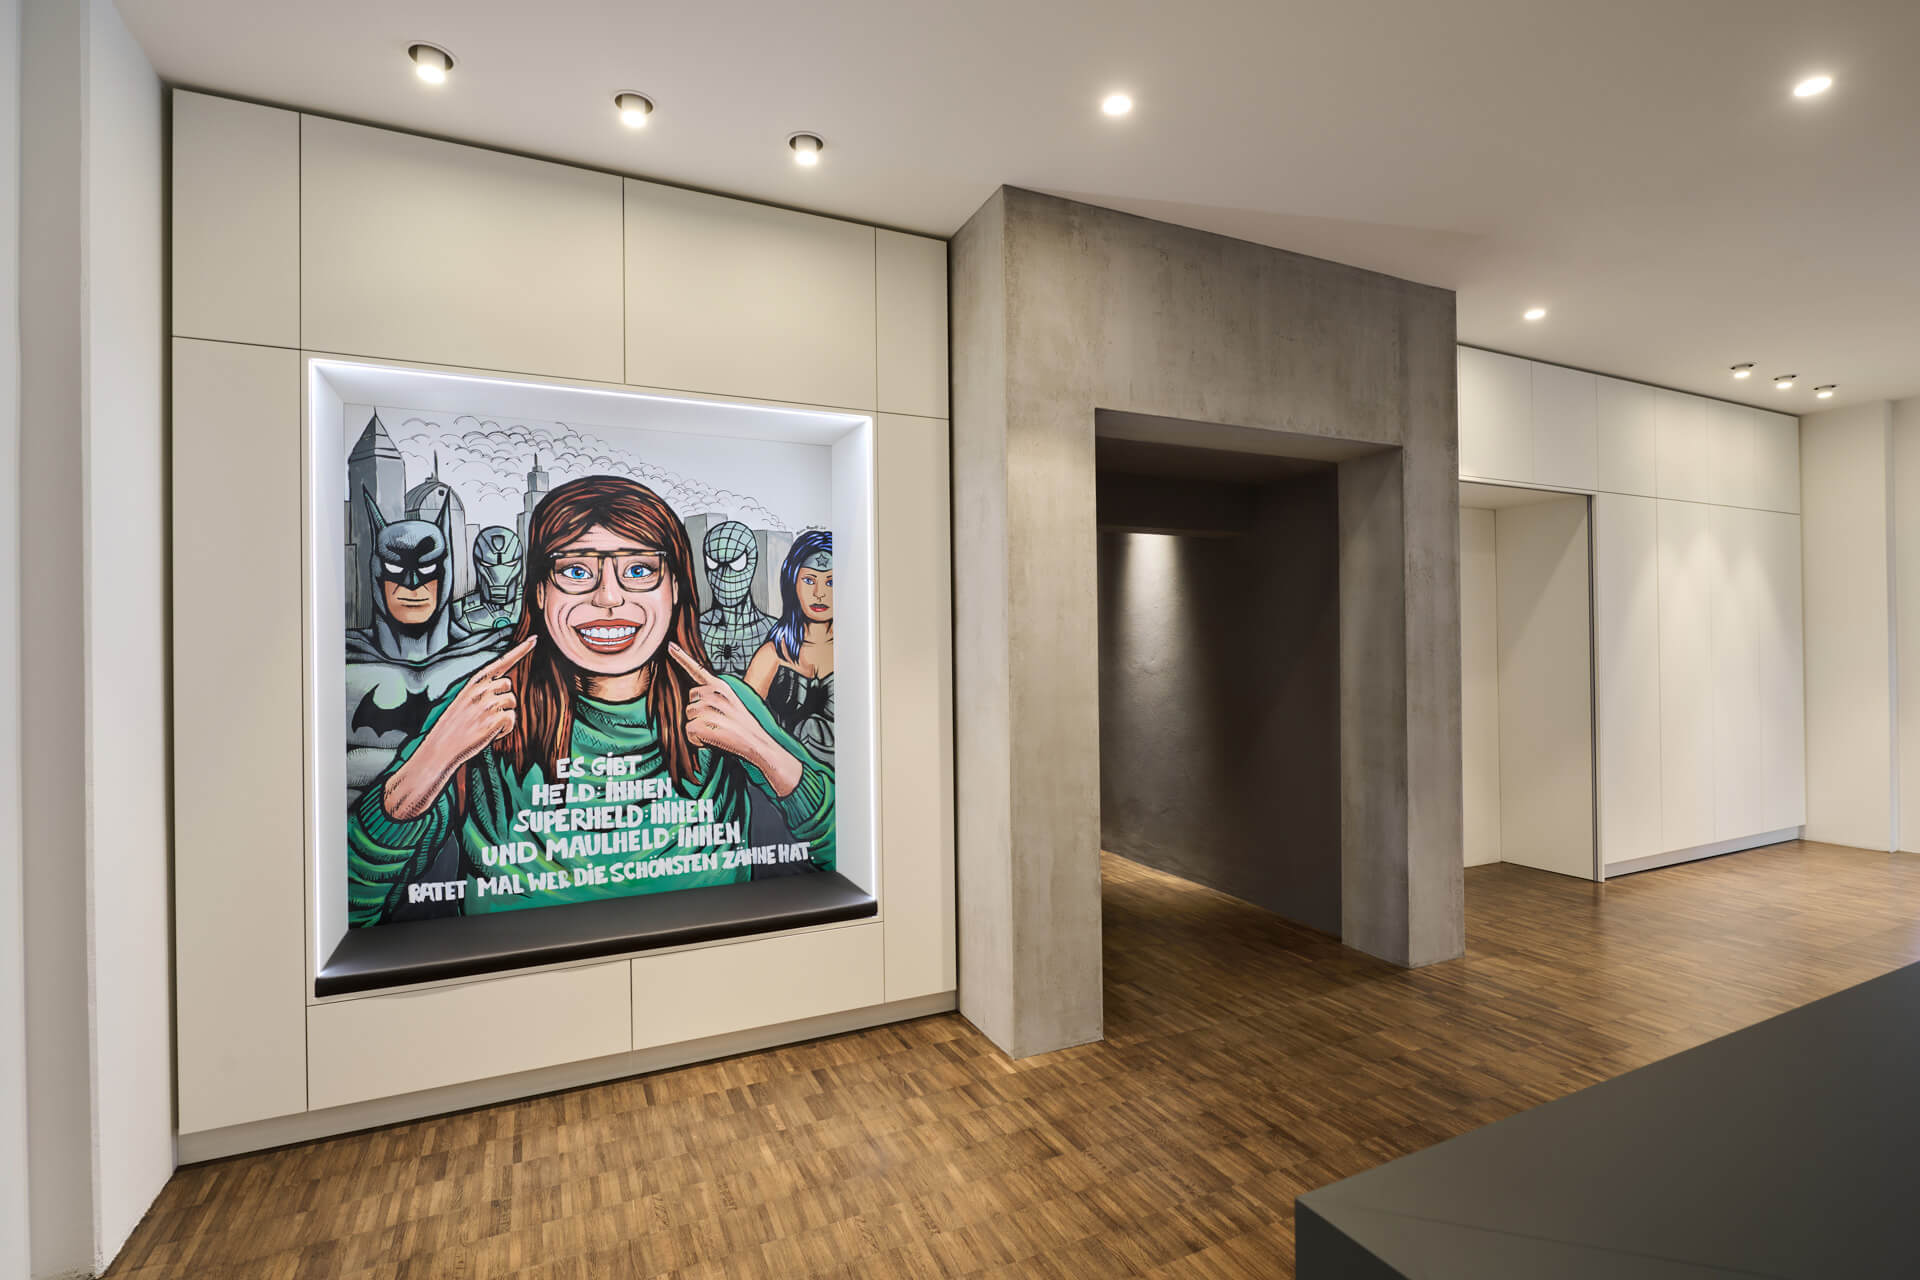 Empfangsbereich der Zahnarztpraxis maulheld:innen, an der Wand hängt ein Bild mit verschiedenen Superheld:innen und einer Maulheldin.